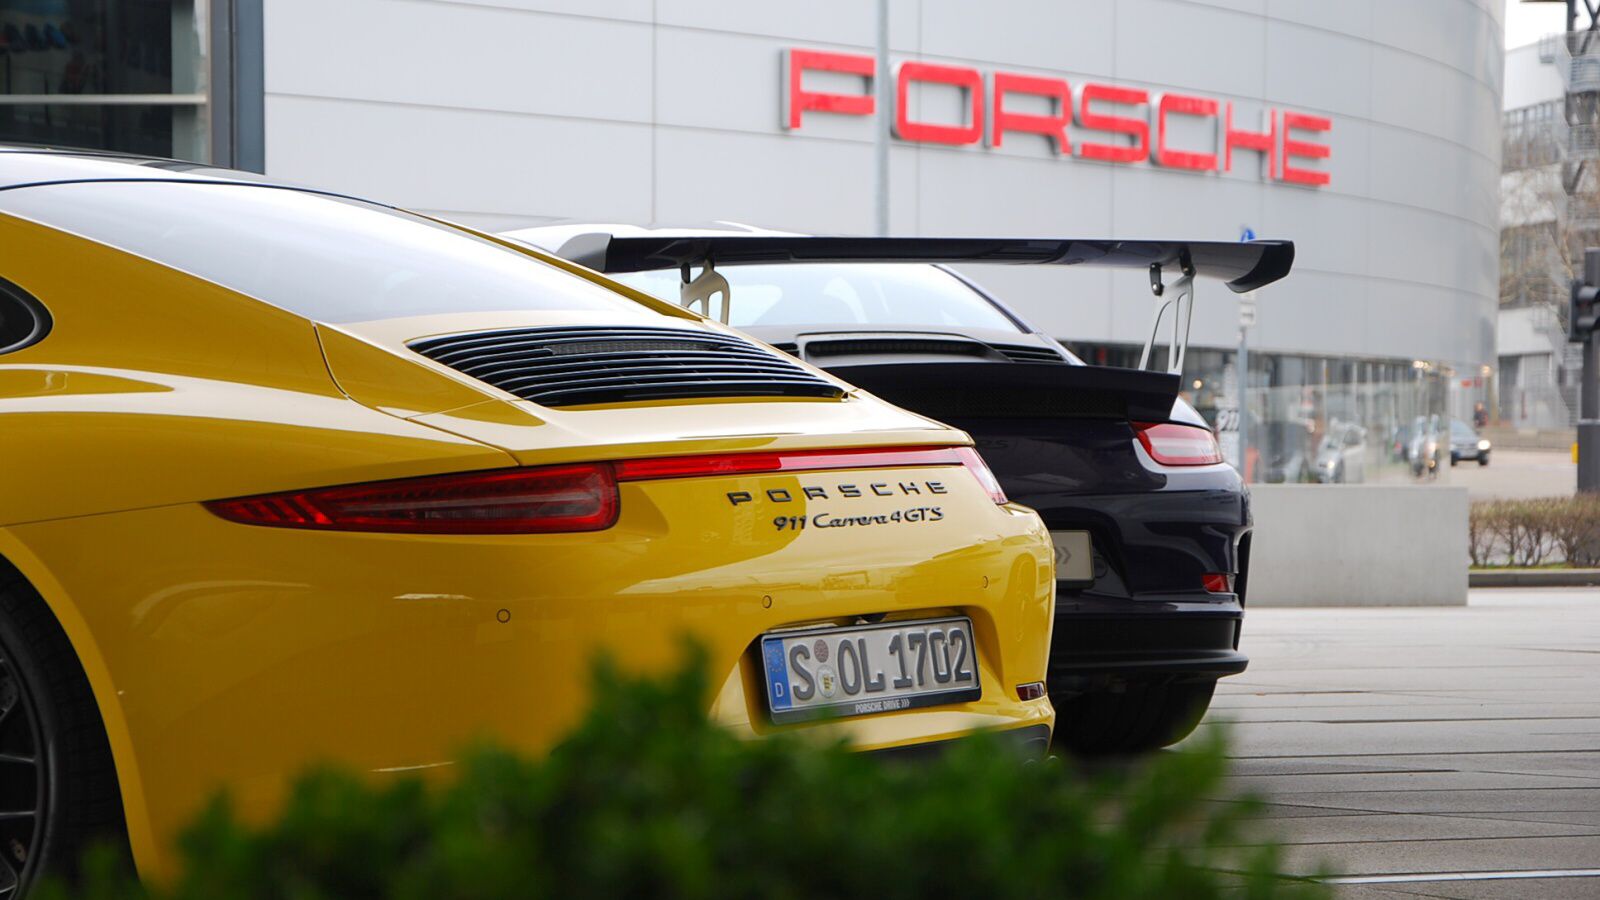 vozy Porsche před budovou muzea